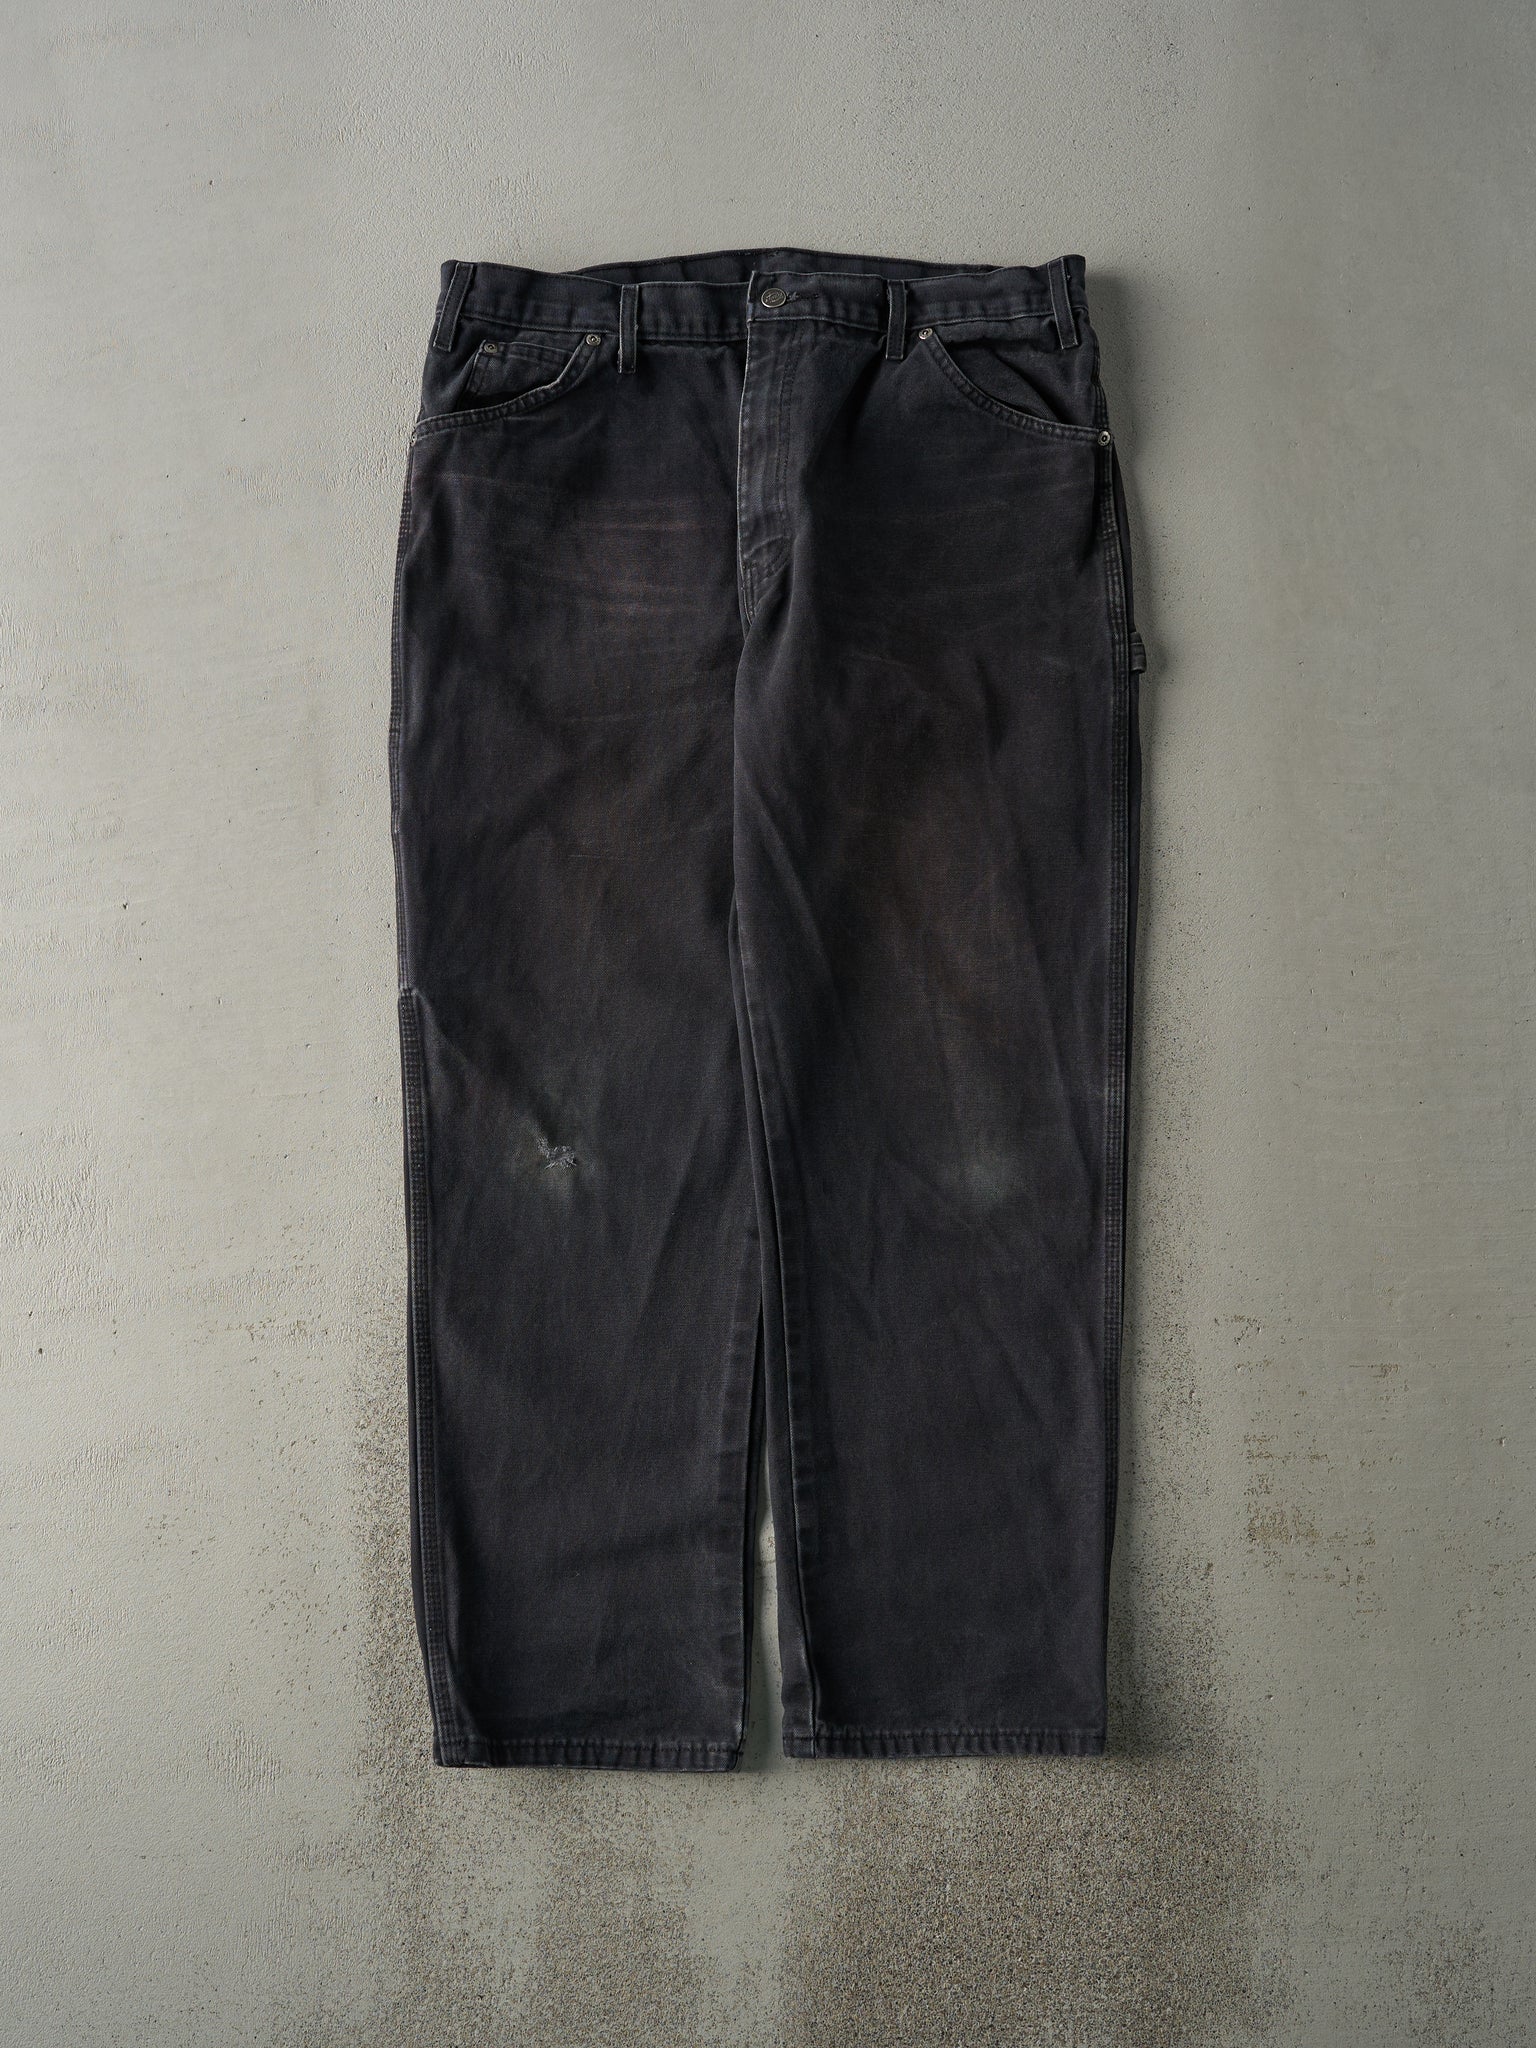 Vintage 90s Faded Black Dickies Carpenter Pants (36x30)